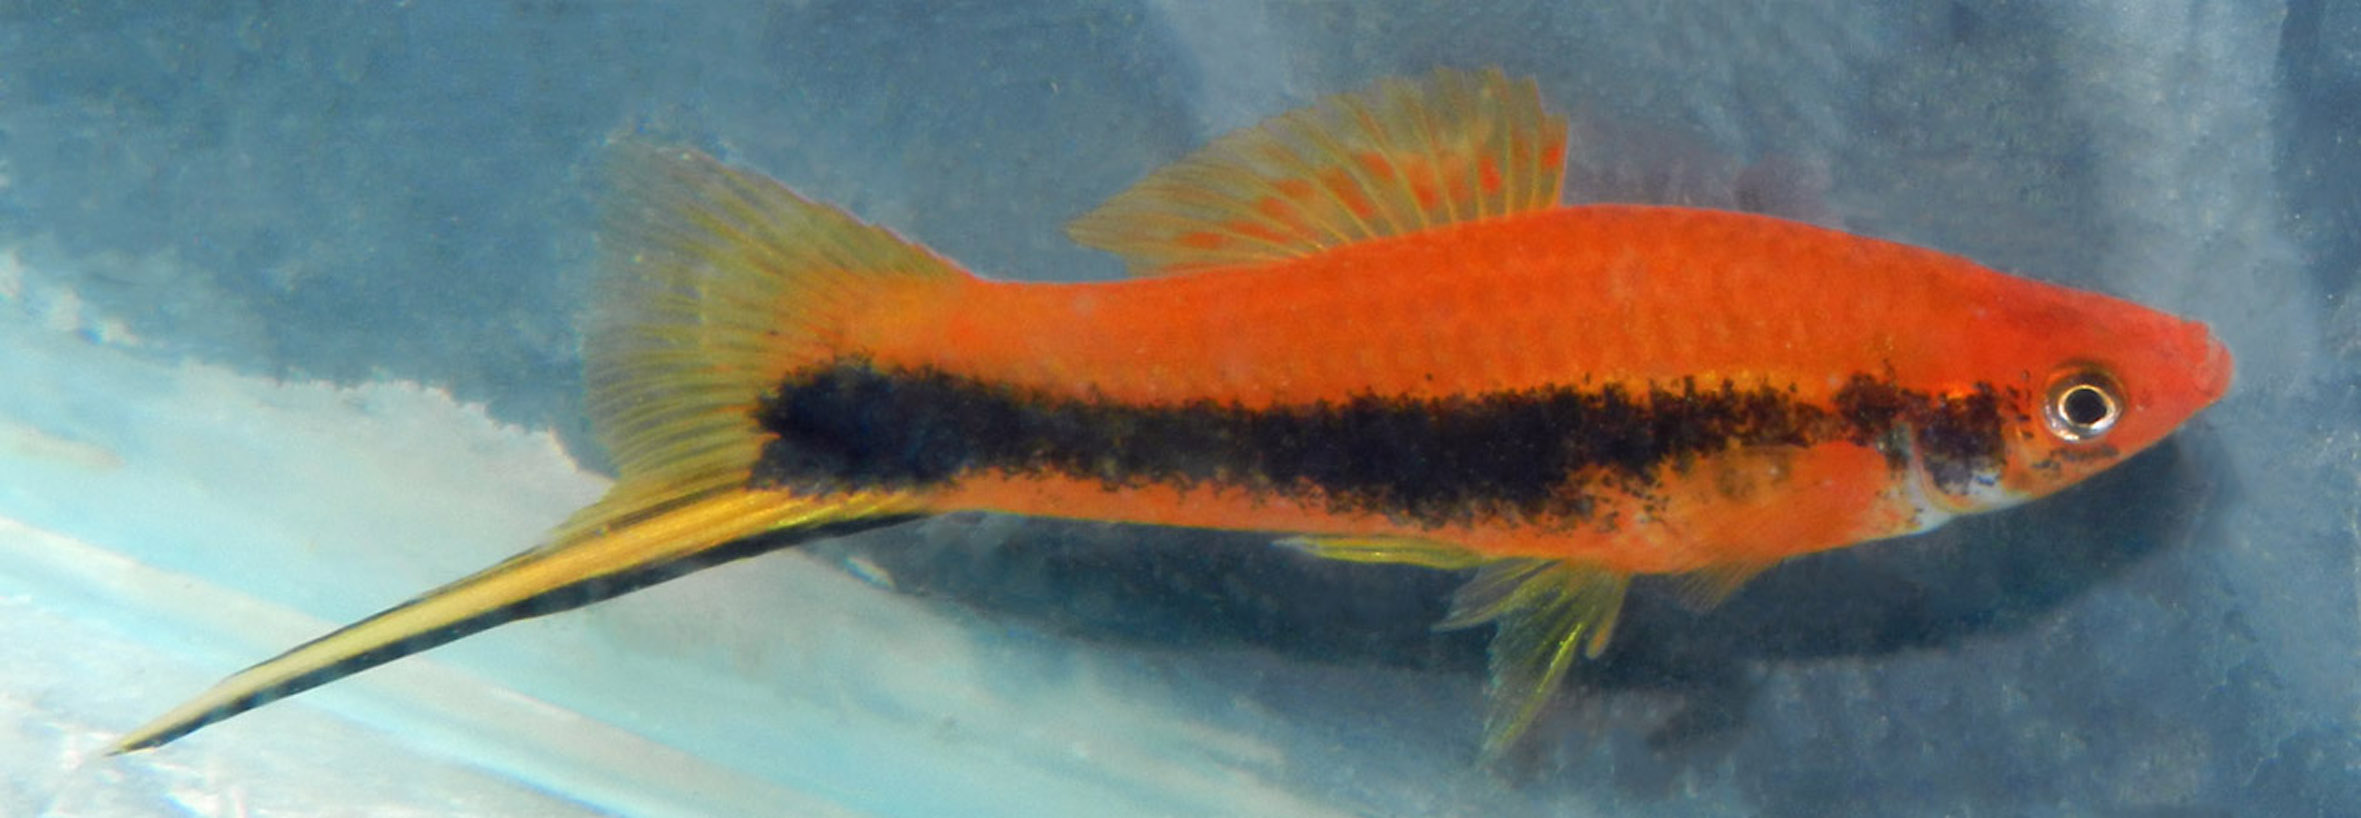 Xiphophorus hellerii, tuxedo red